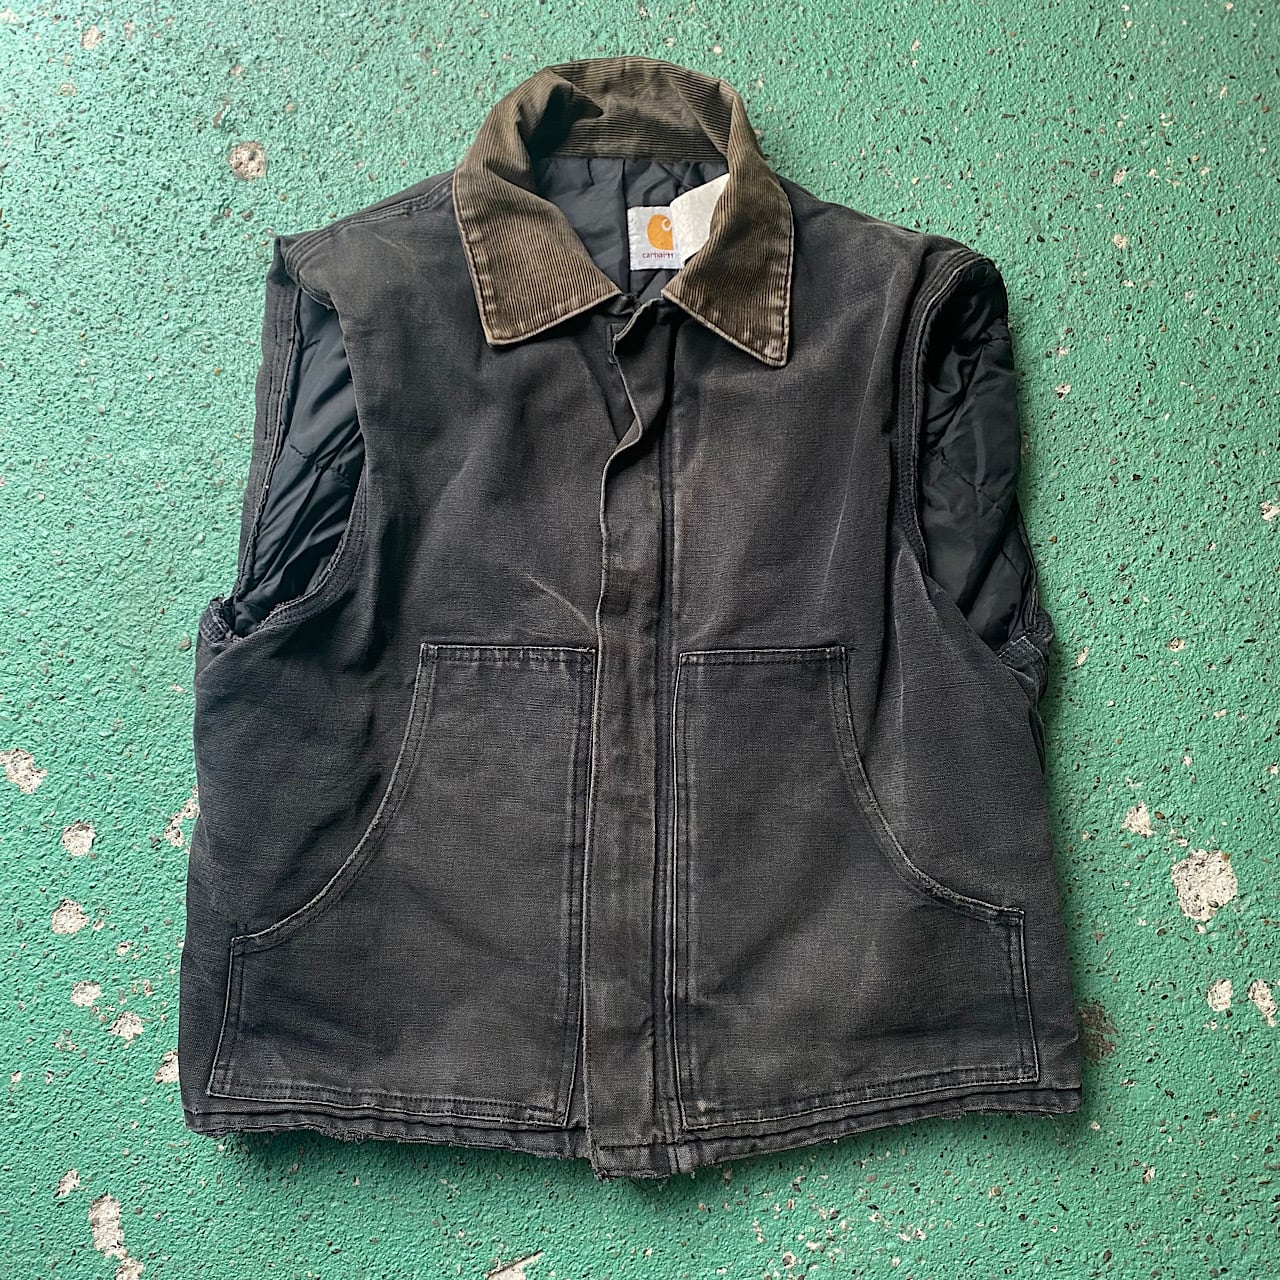 Vintage Remake Vest Tailored Jacket